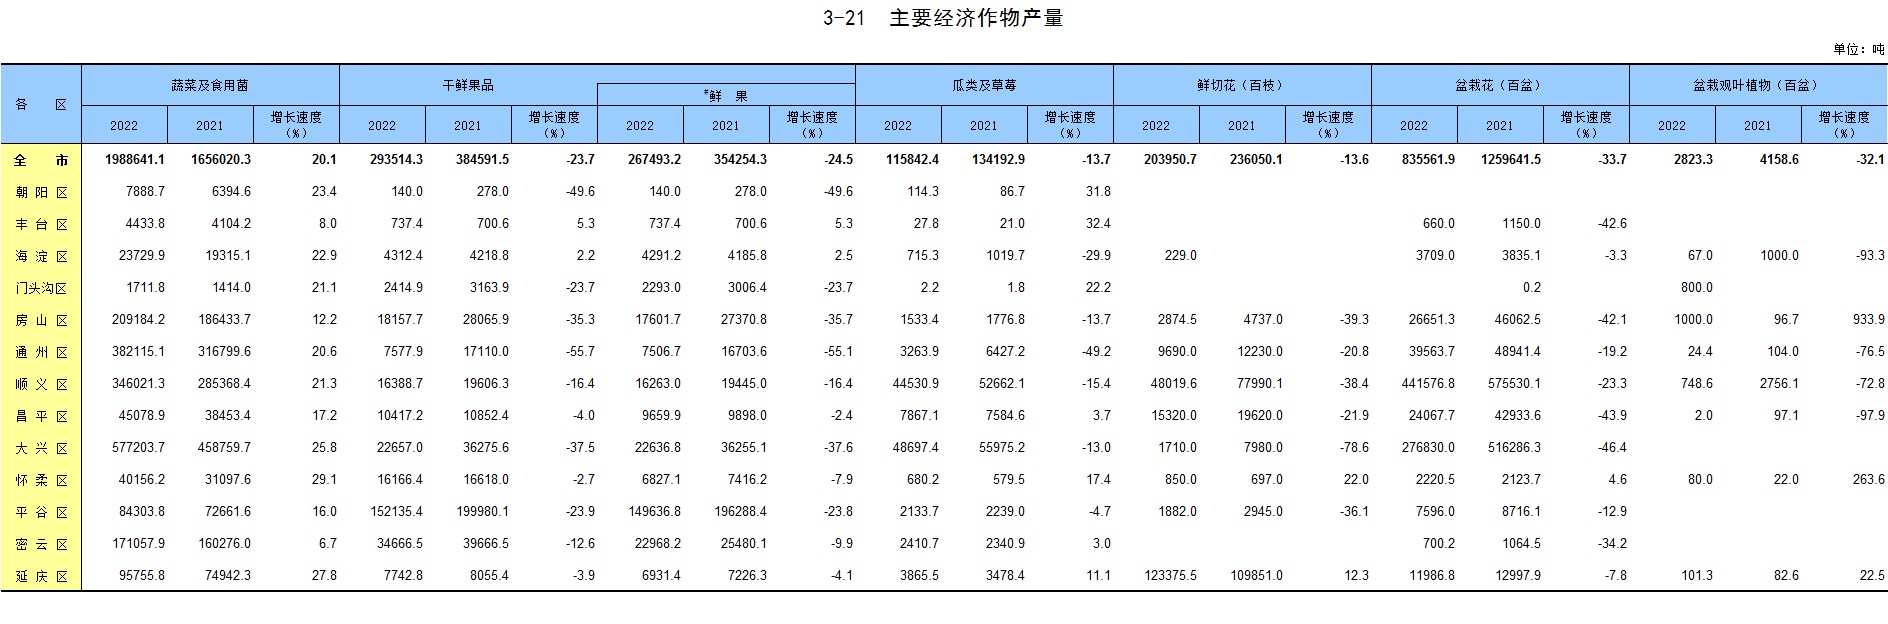 北京区域统计年鉴